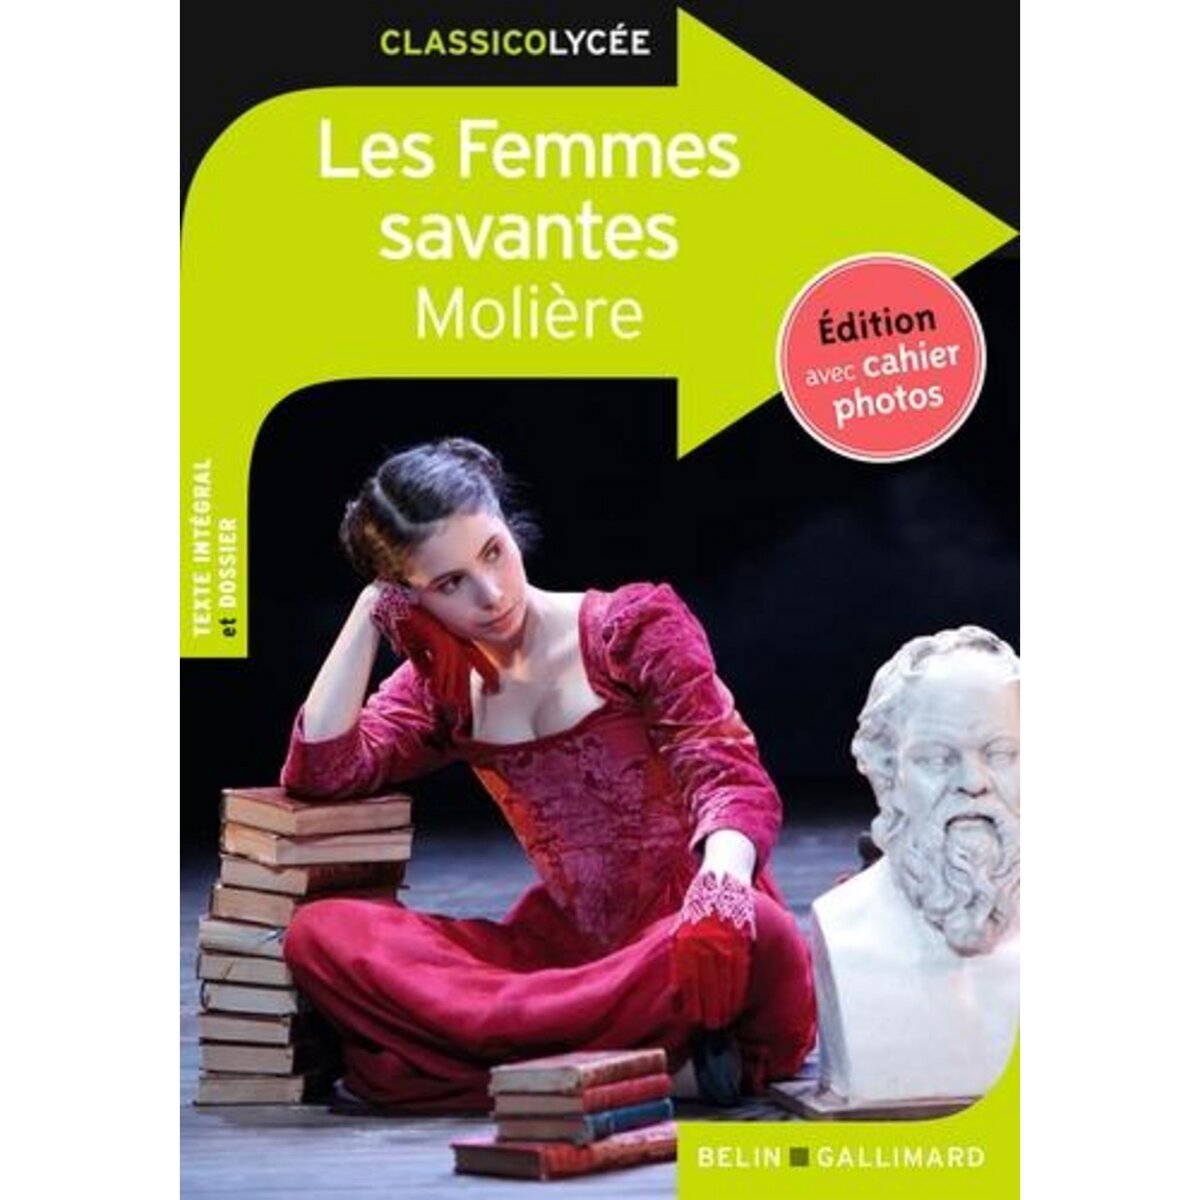  LES FEMMES SAVANTES, Molière